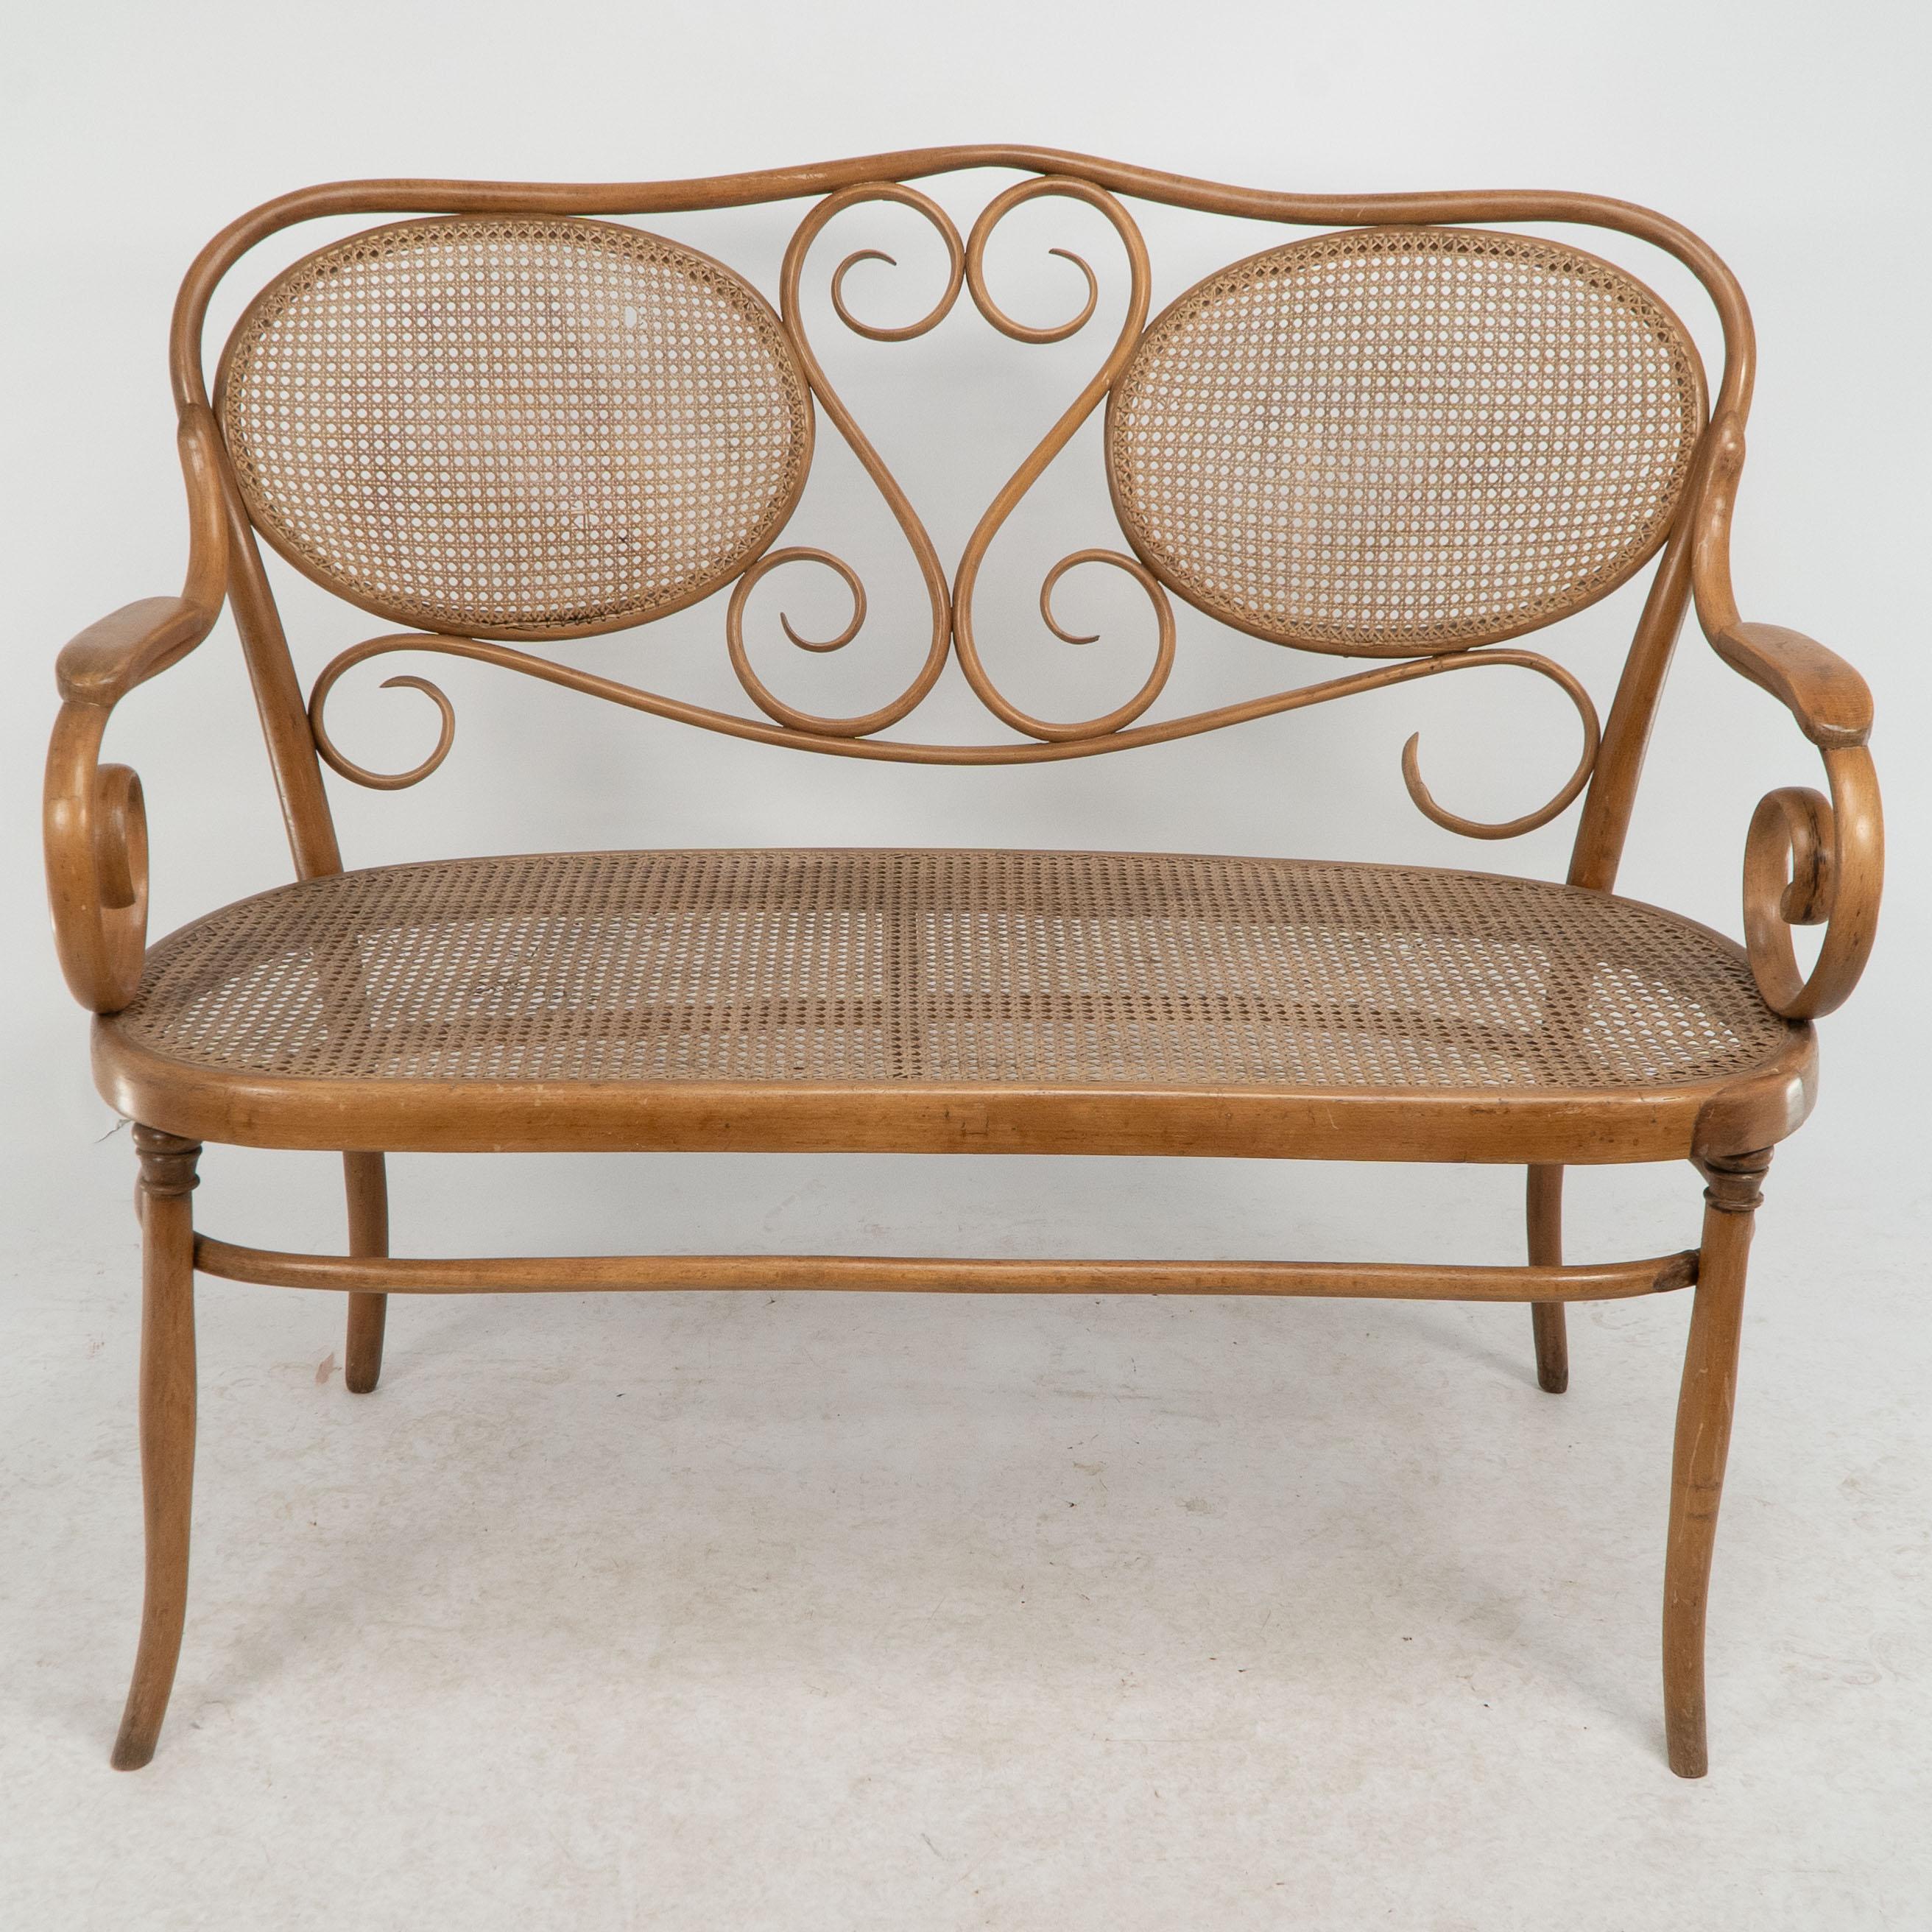 Thonet.
Canapé en hêtre courbé avec un magnifique décor de volutes au dos et aux accoudoirs, avec une assise et un dossier cannelés.